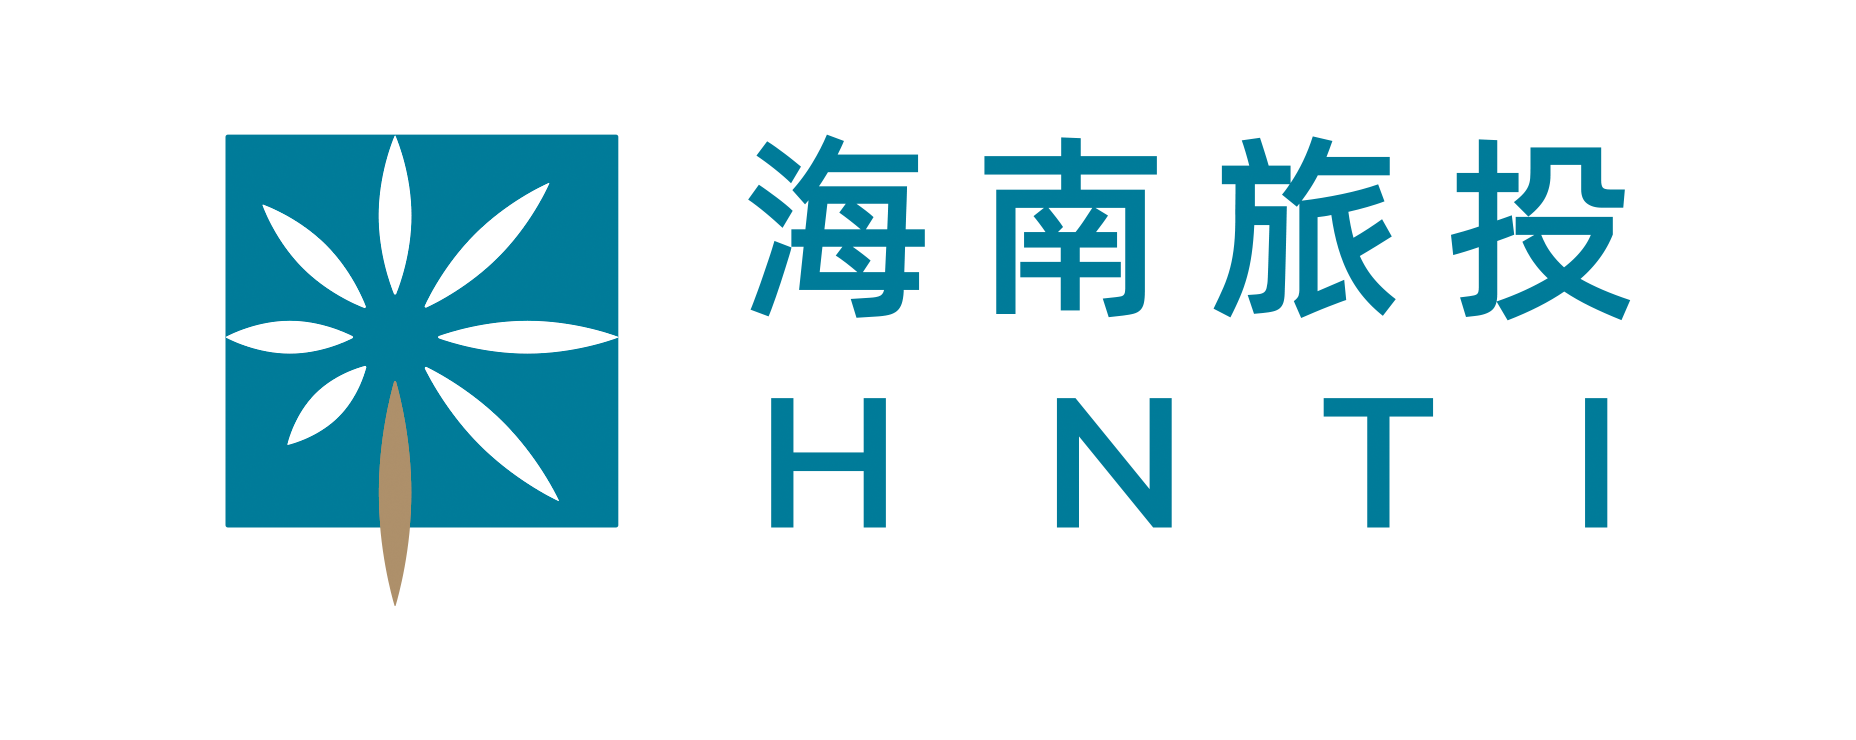 旅投logo-2022-5-27.png